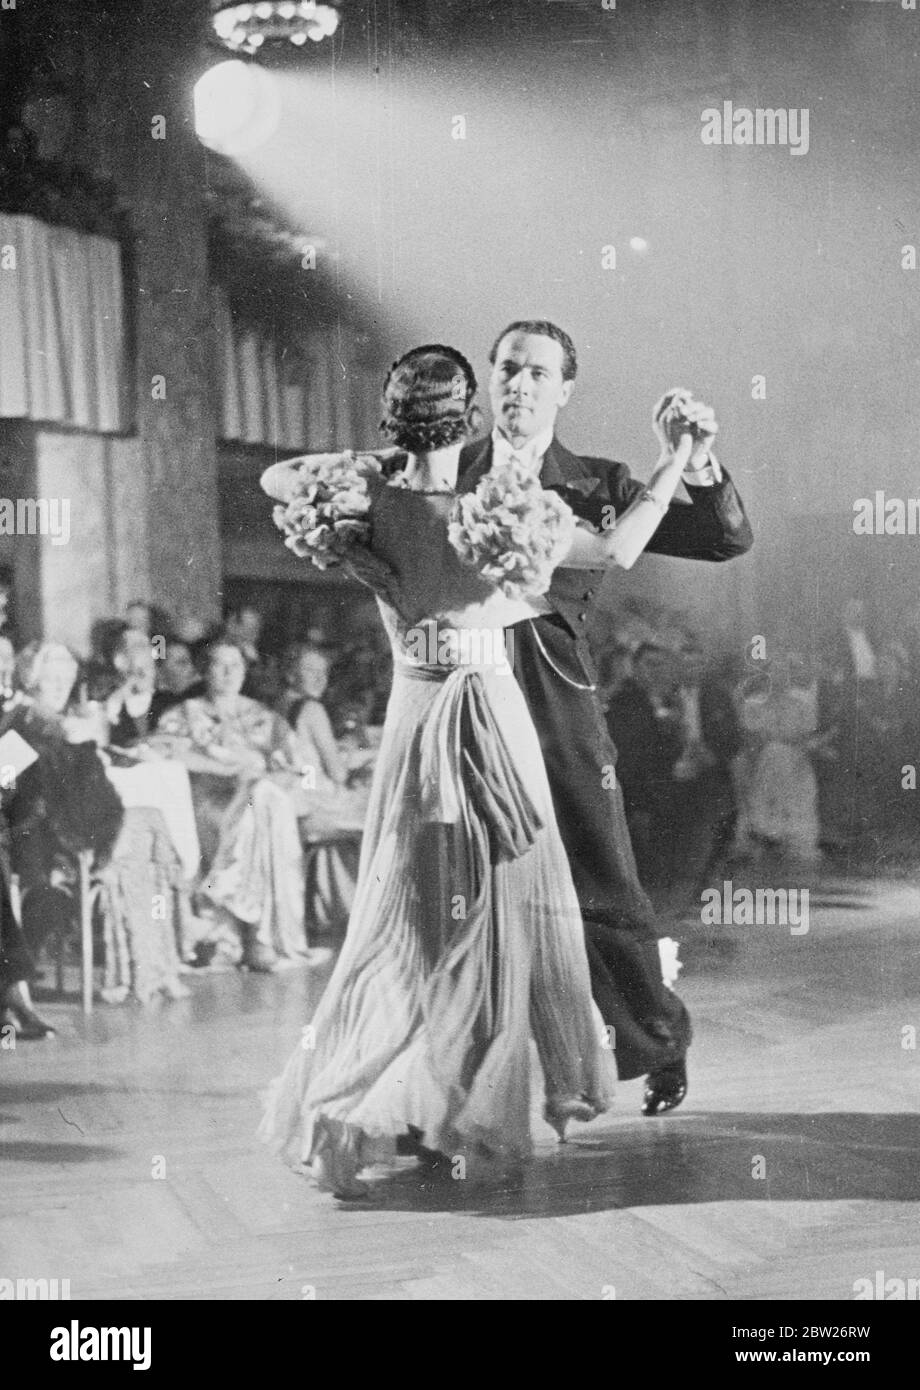 La coppia britannica vince il campionato europeo di ballo a Berlino. John Whirls e Miss Rense Sissons, campioni di ballo amatoriale britannico, hanno ricevuto nuovamente il titolo europeo in occasione di un concorso tenutosi nella sala da ballo dello zoo di Berlino. Spettacoli fotografici, John Wells e Miss Renee Sissons scivolano sul pavimento mentre hanno partecipato al concorso. 18 ottobre 1937 Foto Stock